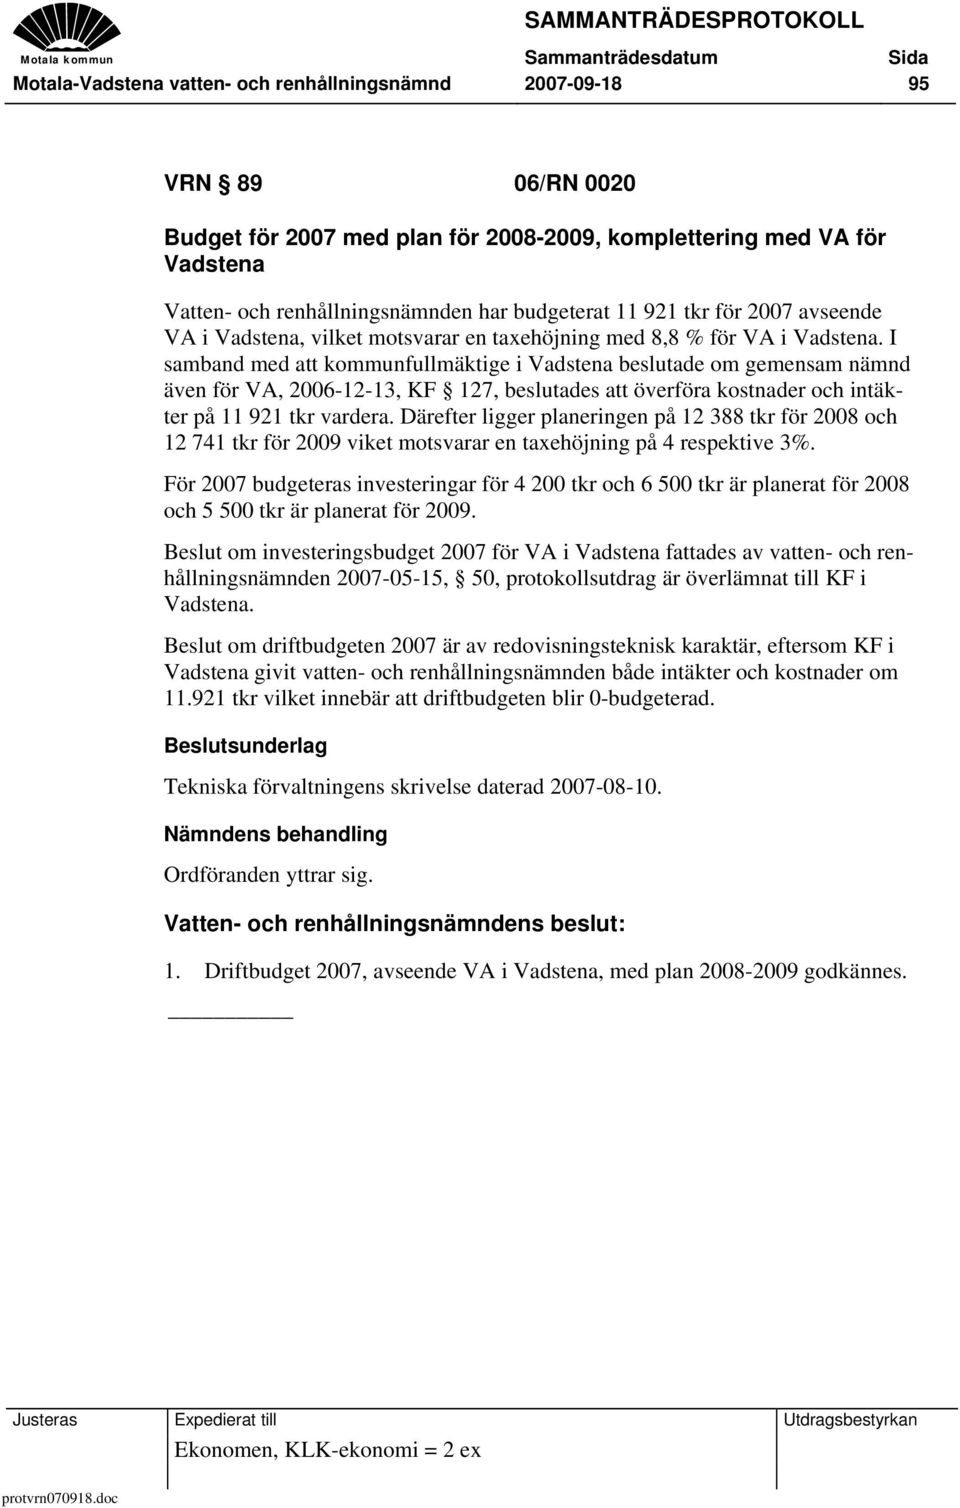 I samband med att kommunfullmäktige i Vadstena beslutade om gemensam nämnd även för VA, 2006-12-13, KF 127, beslutades att överföra kostnader och intäkter på 11 921 tkr vardera.